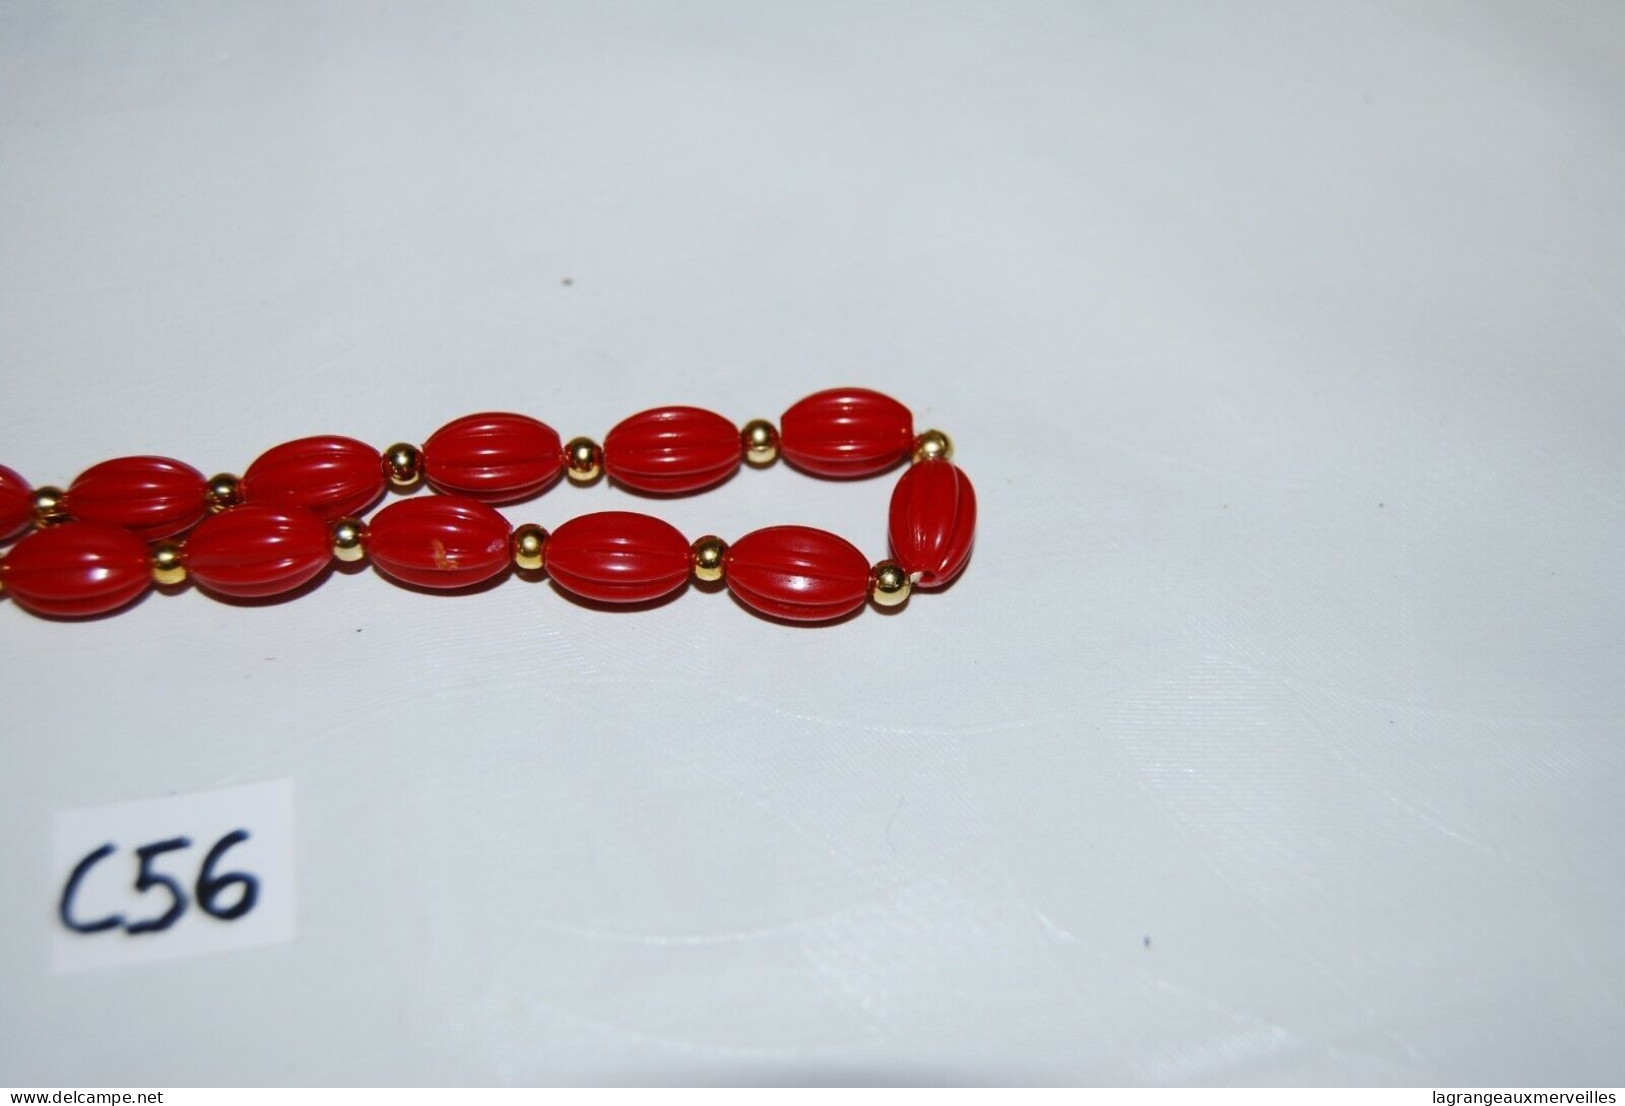 C56 Magnifique Collier De Perles Rouges - Necklaces/Chains